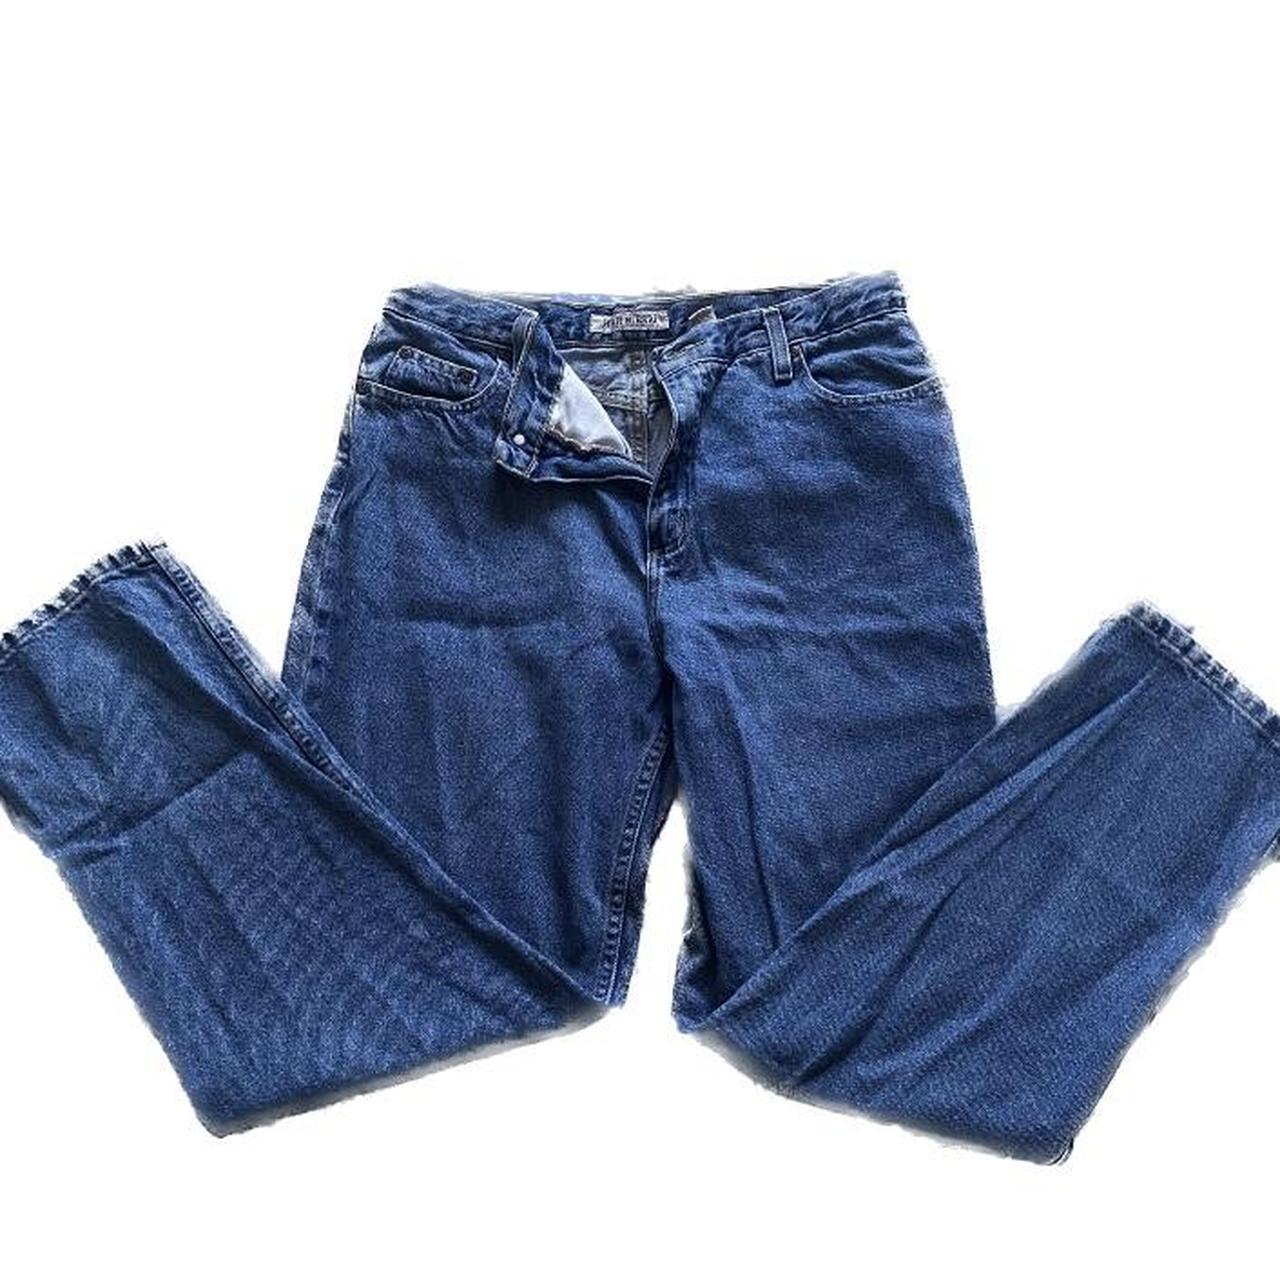 High Sierra Women's Blue Jeans (3)